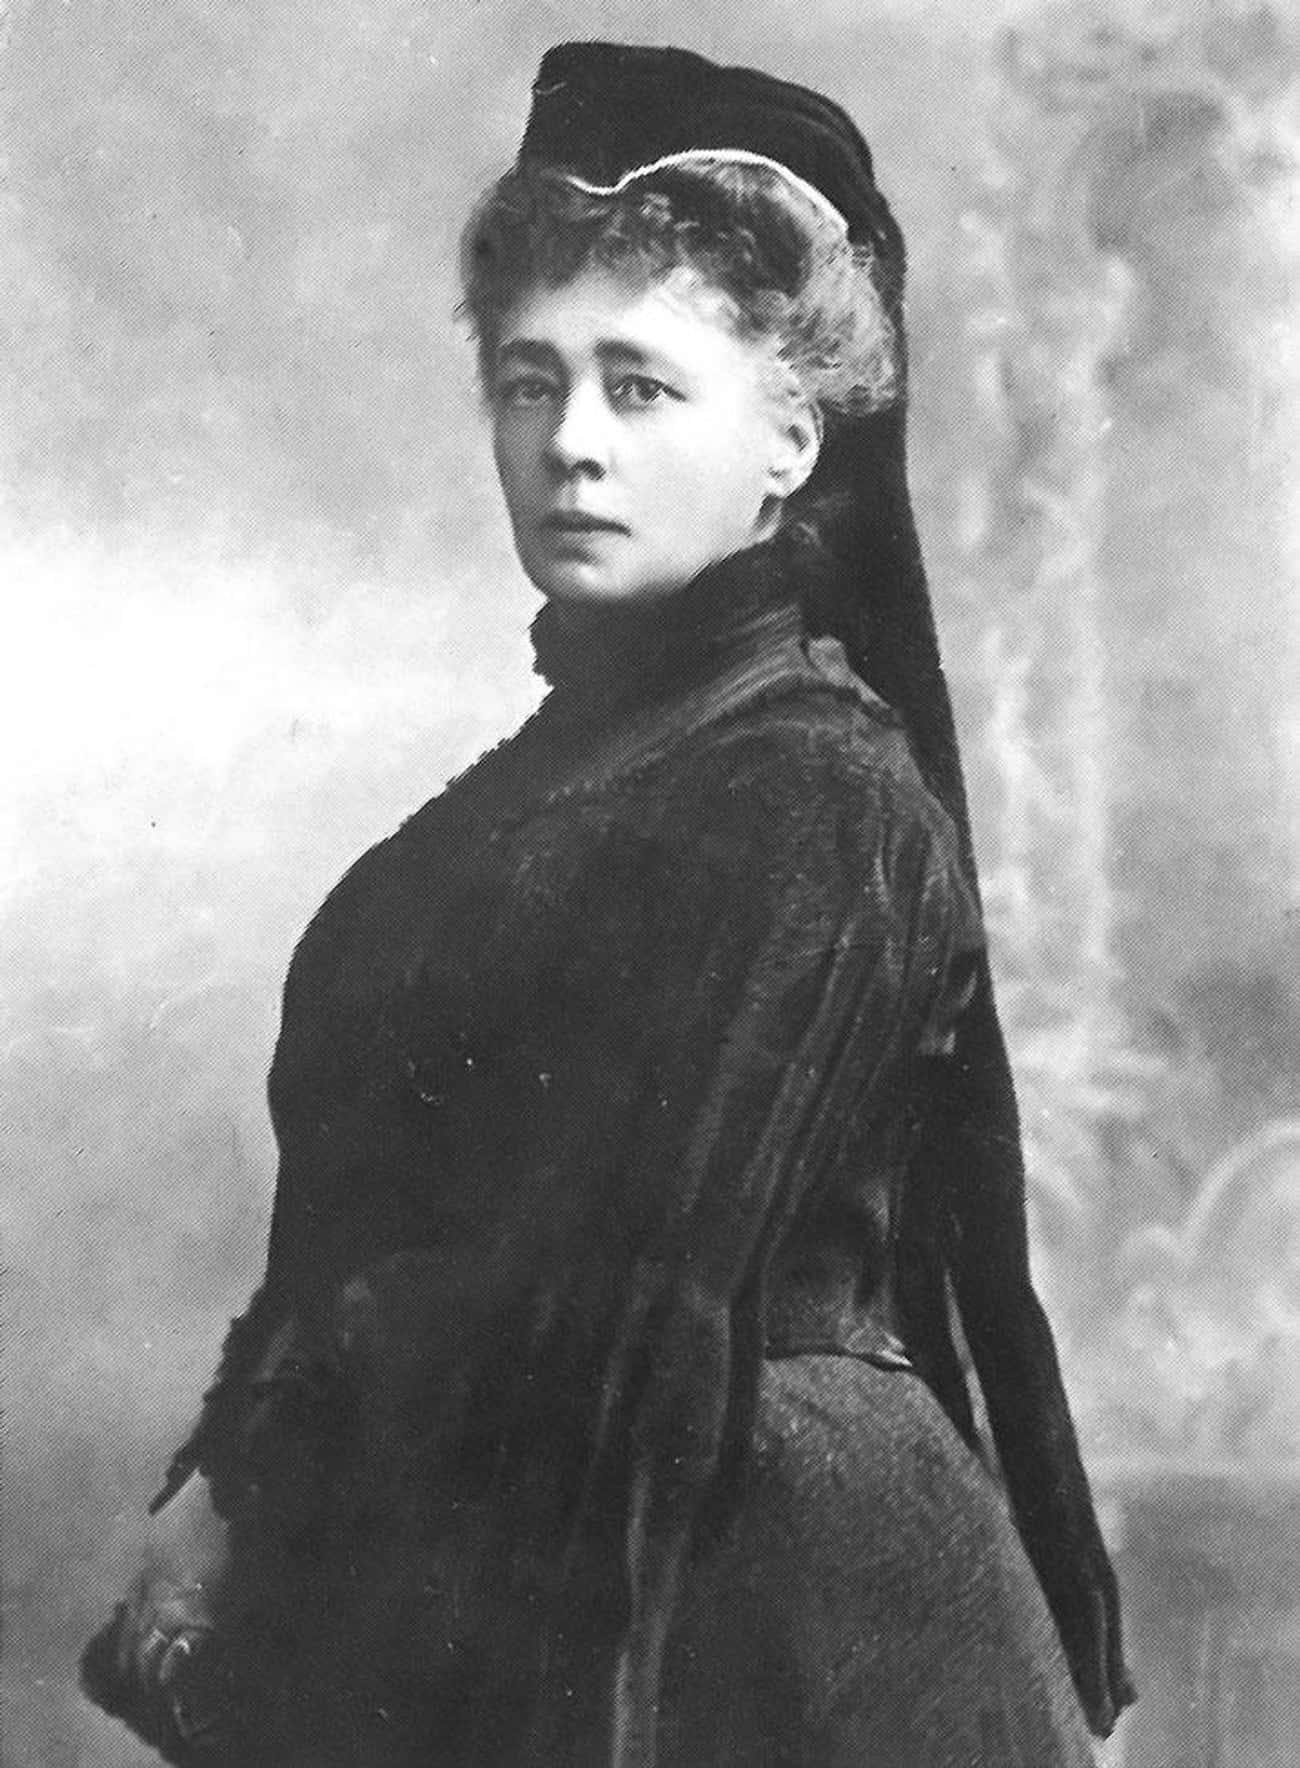 Bertha von Suttner